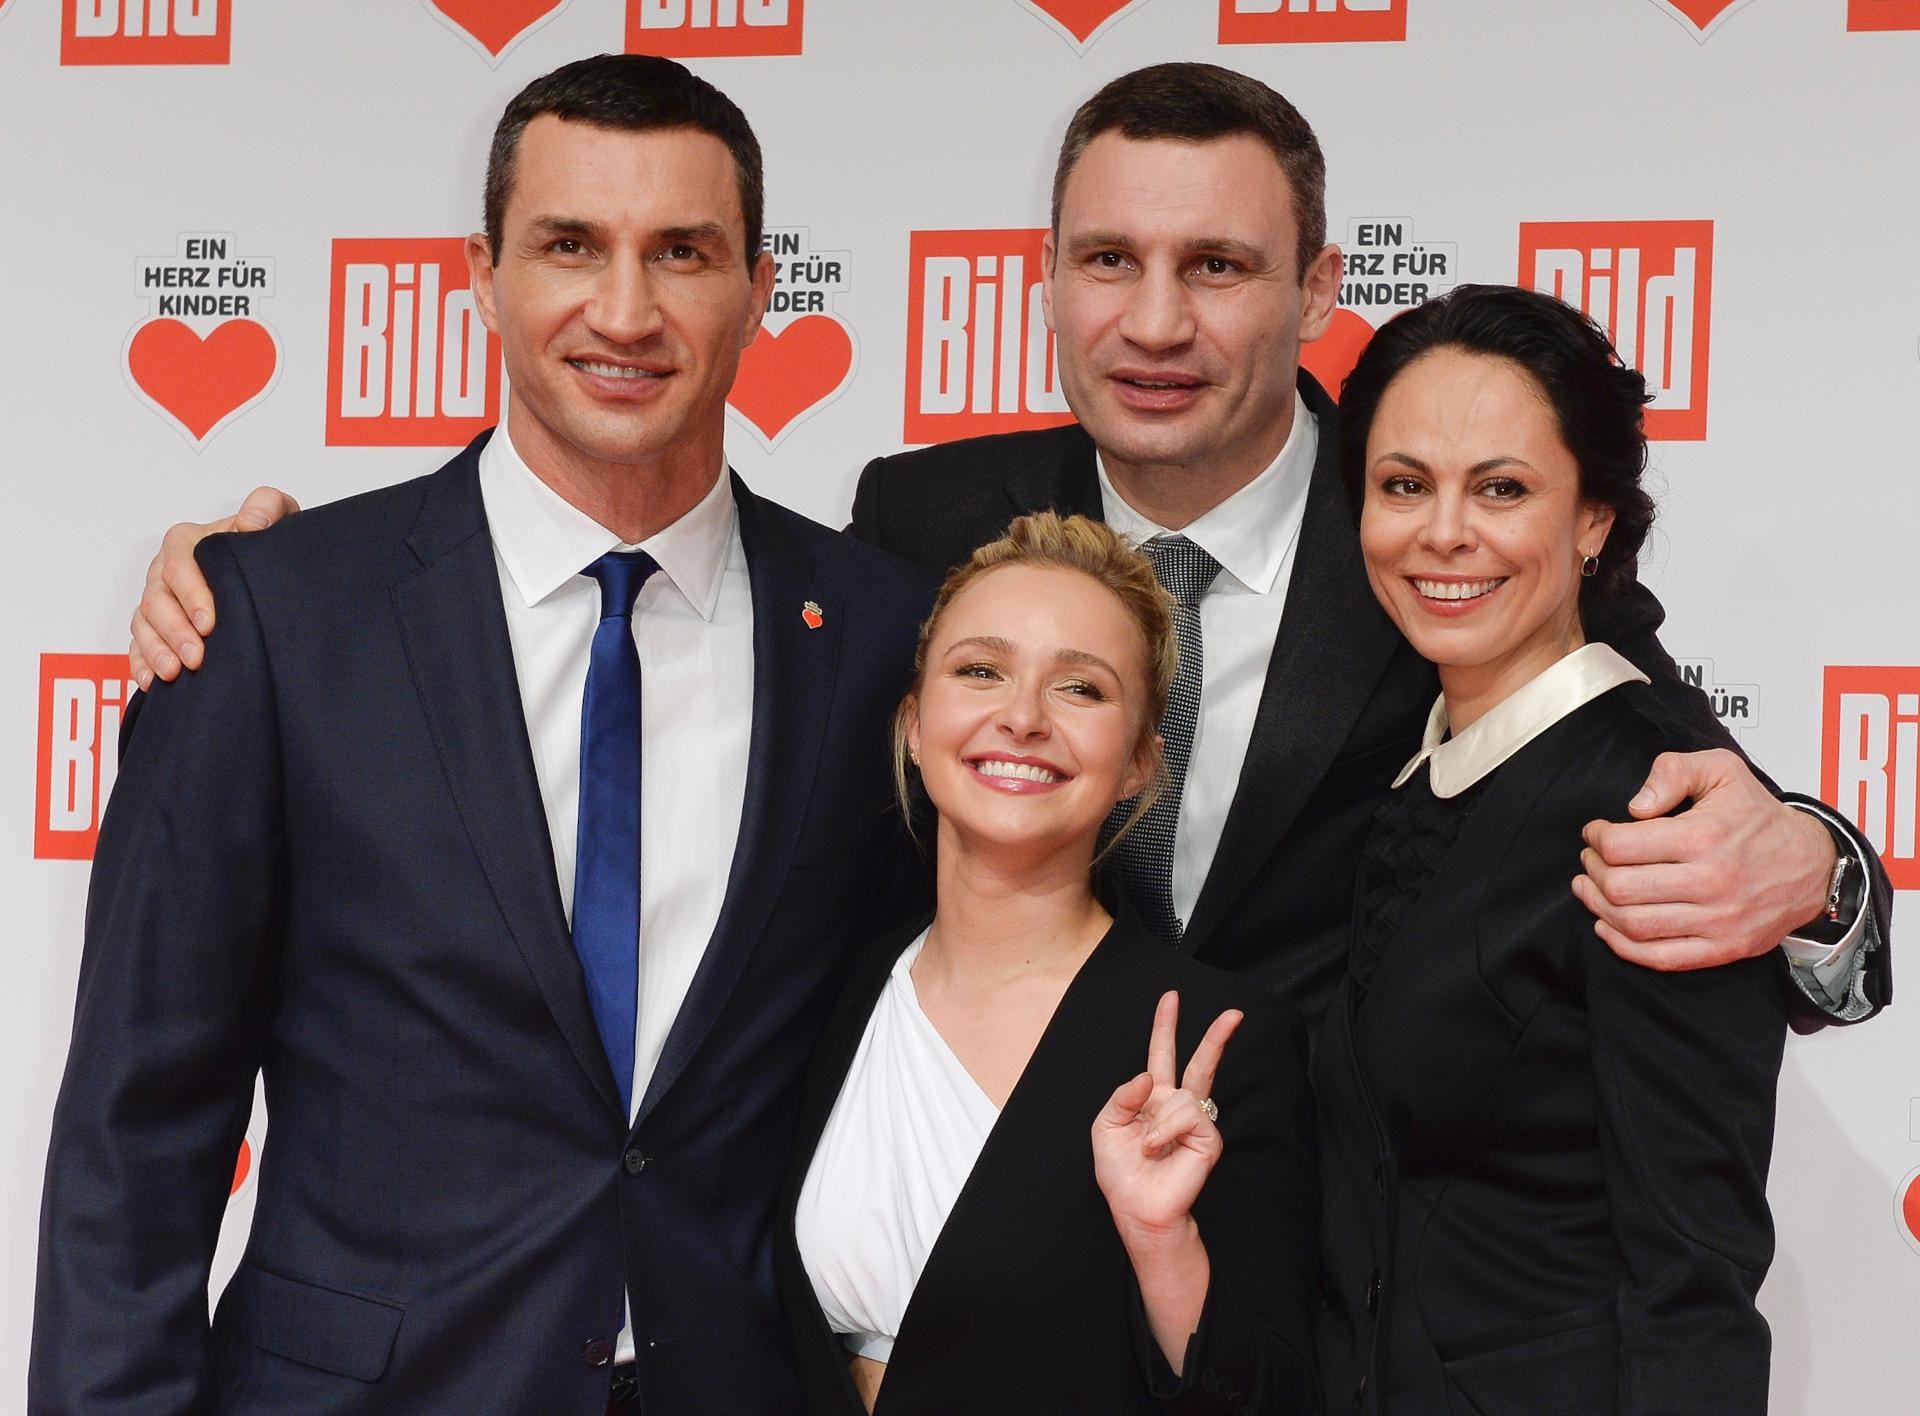 Familienausflug: Wladimir Klitschko mit seiner Freundin, der Schauspielerin Hayden Panettiere, und Vitali Klitschko mit seiner Frau Natalia.